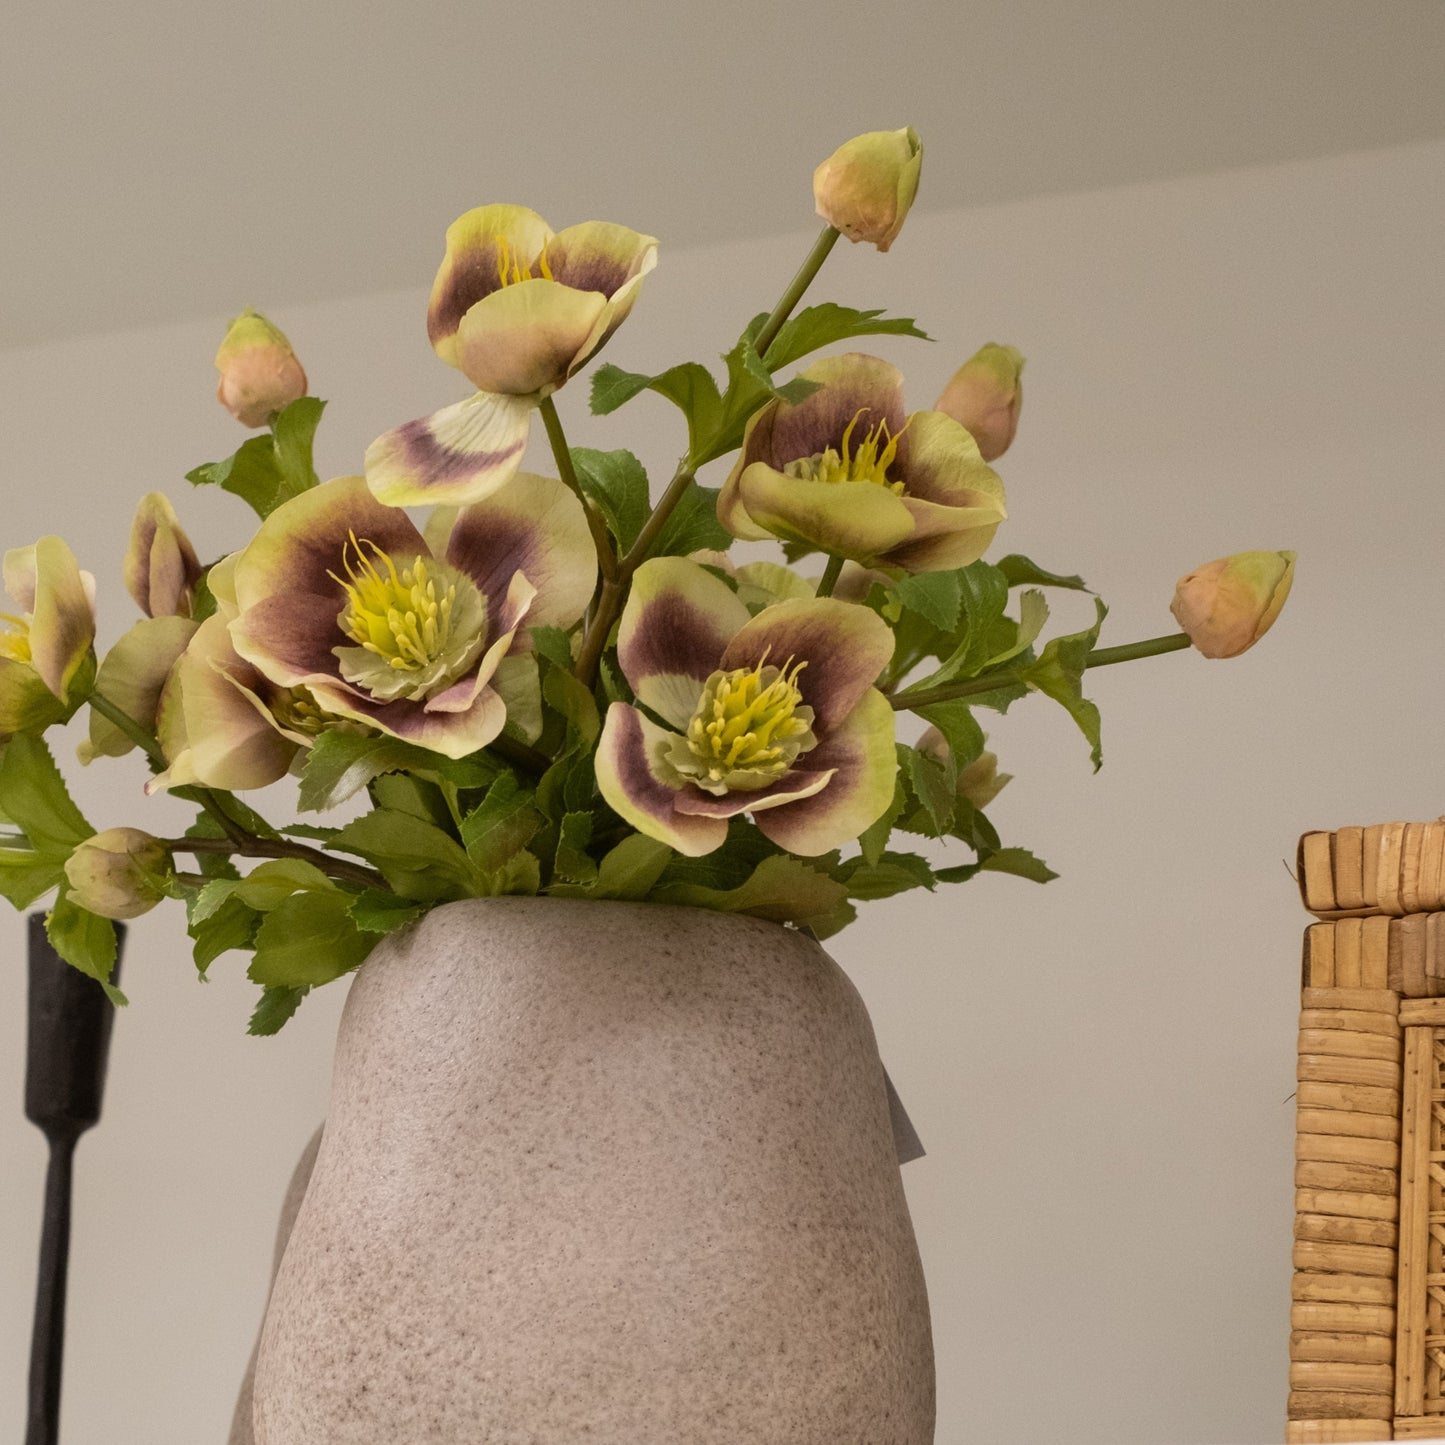 Naya Grey Speckled Organic Shaped Vase